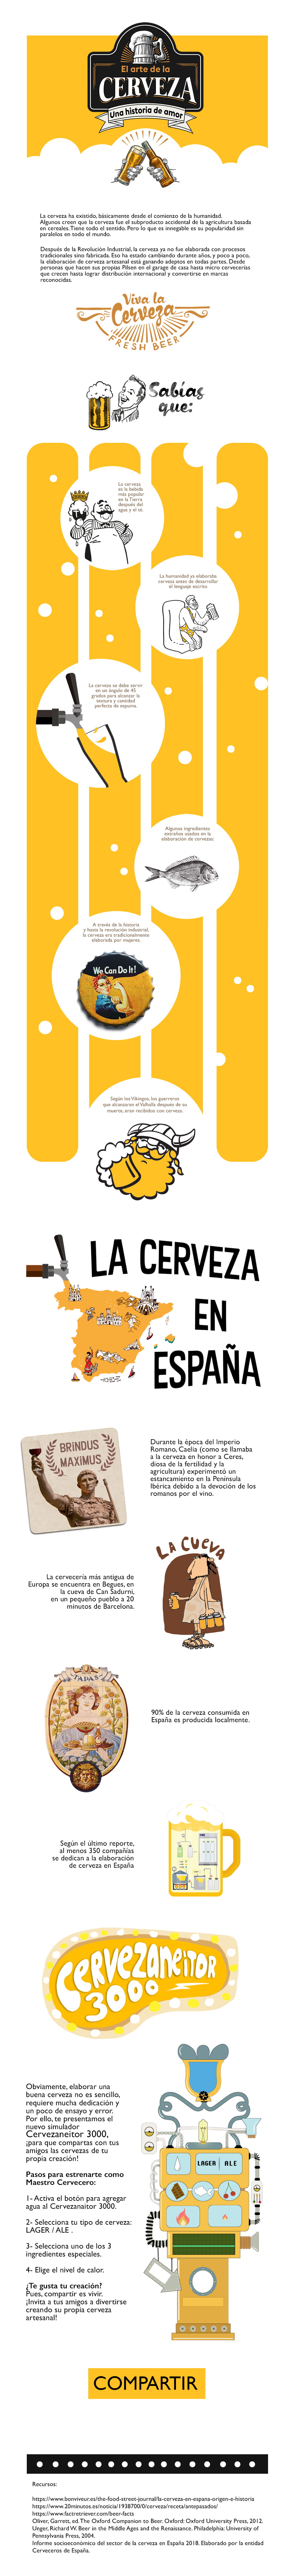 Infografía sobre la historia de la cerveza en España